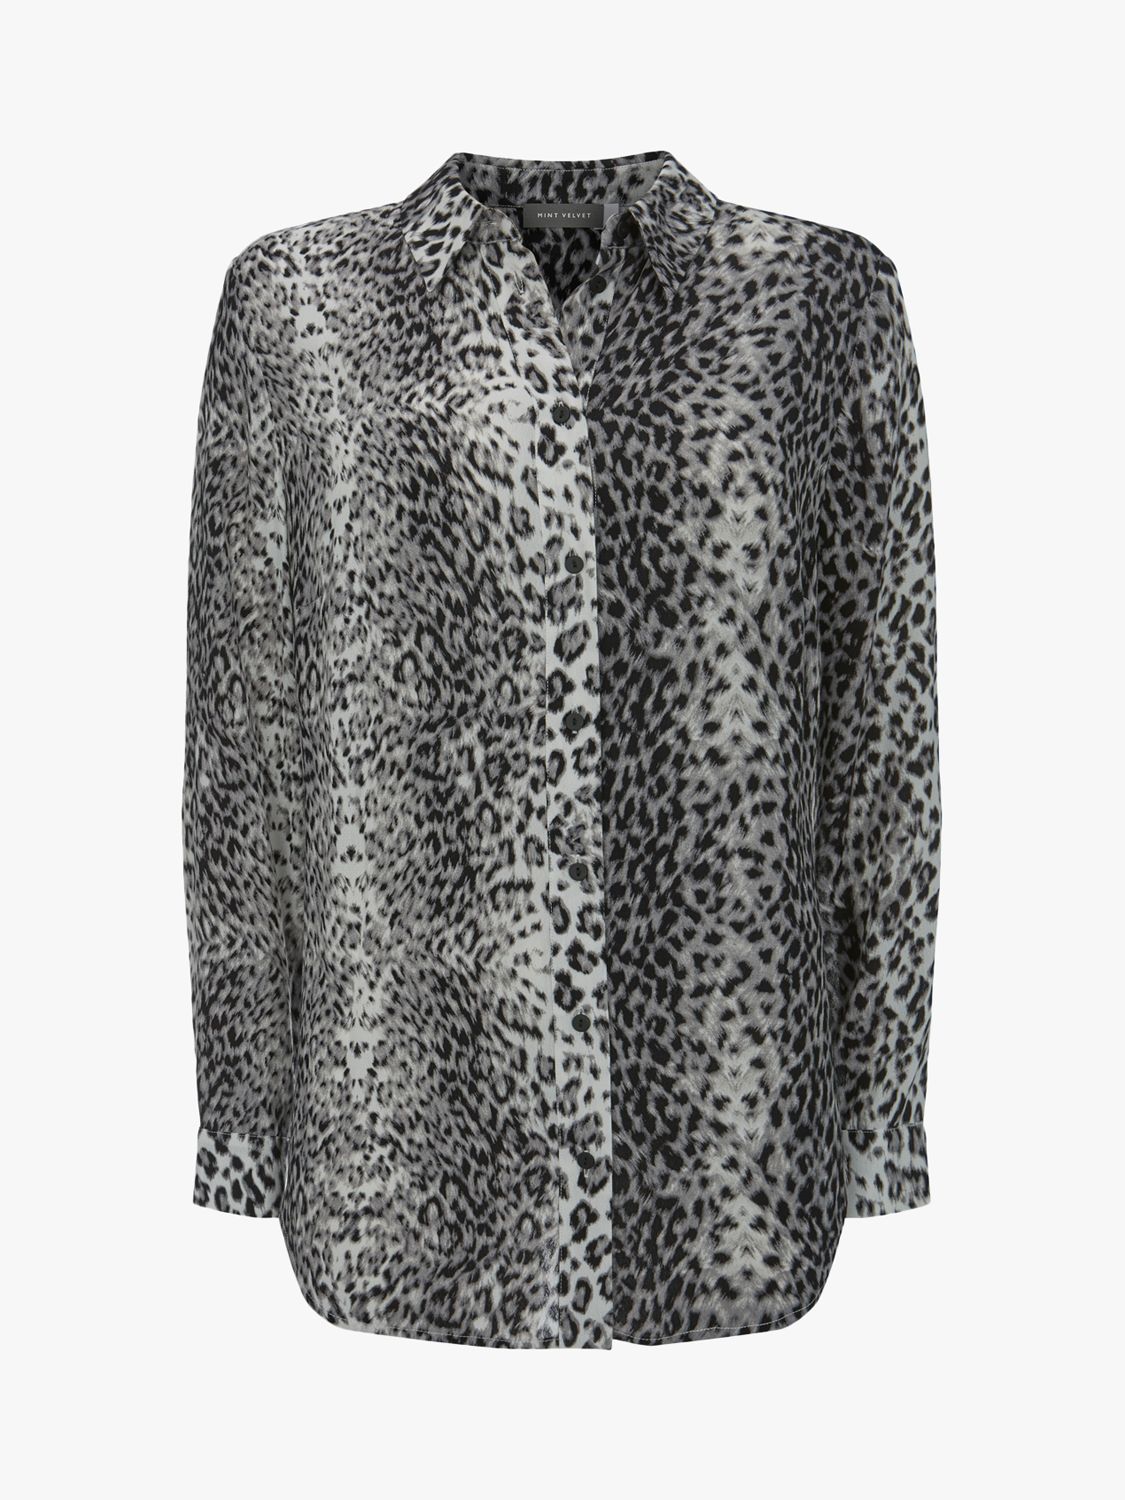 Mint Velvet Leopard Print Leggings, Grey/Multi  Leopard print leggings, Mint  velvet, Printed leggings